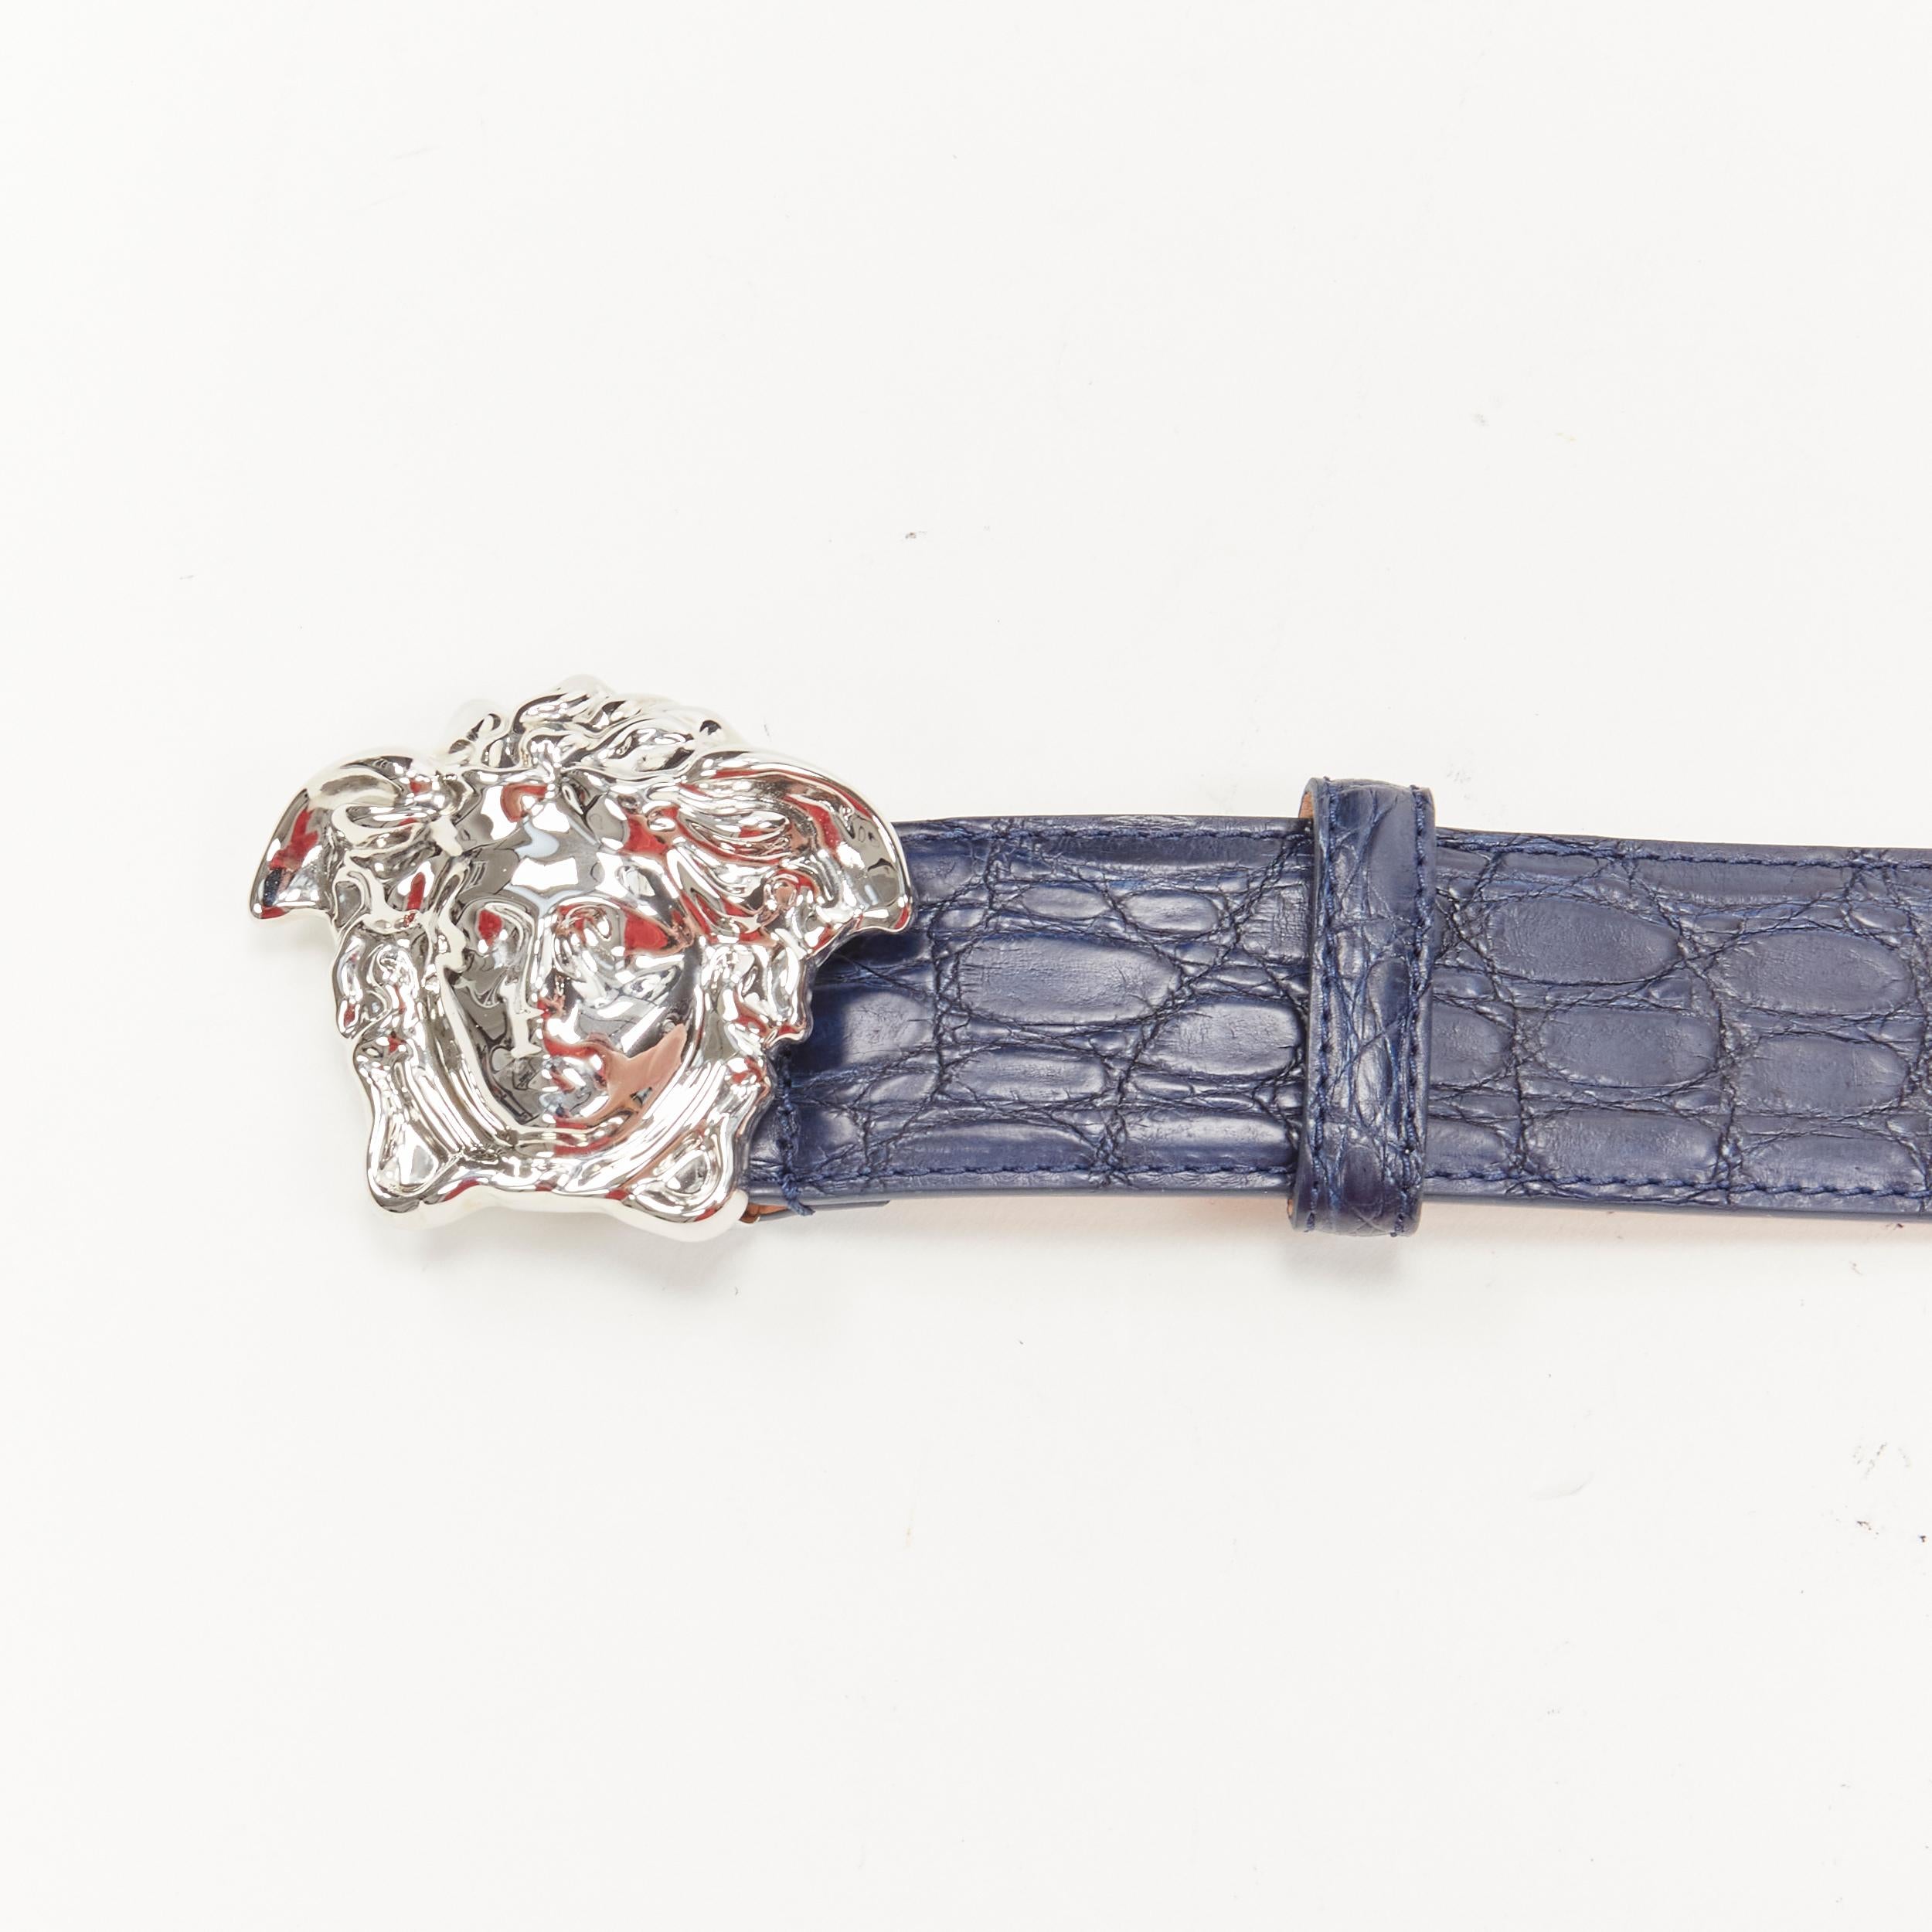 new VERSACE $1200 La Medusa silver buckle blue croc leather belt 115cm 44-48